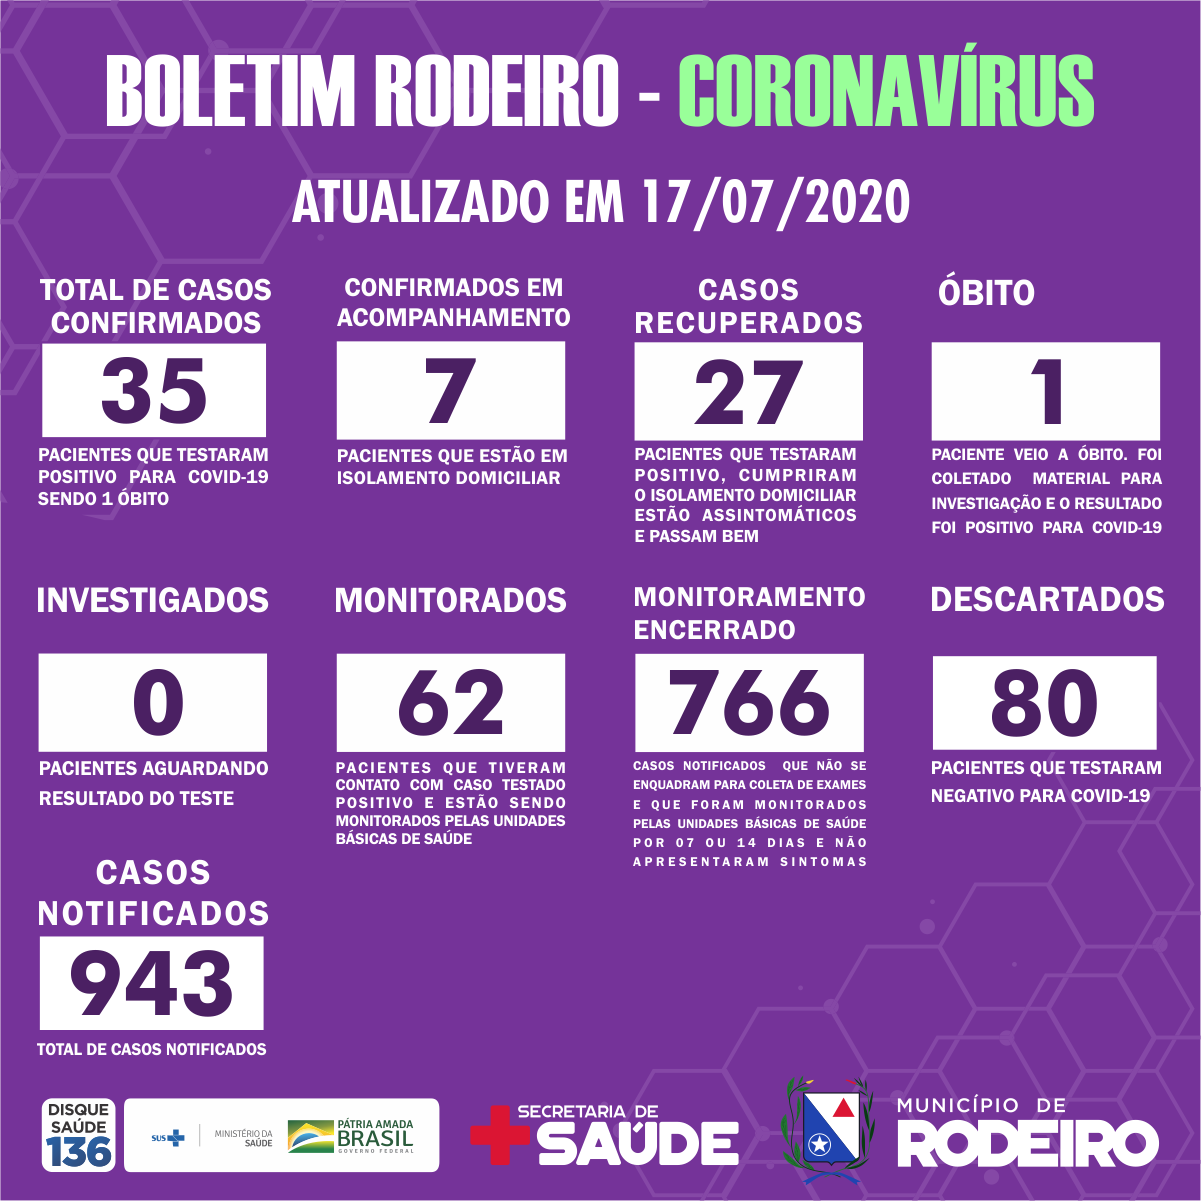 Boletim epidemiológico do Município de Rodeiro coronavírus, atualizado em 17/07/2020